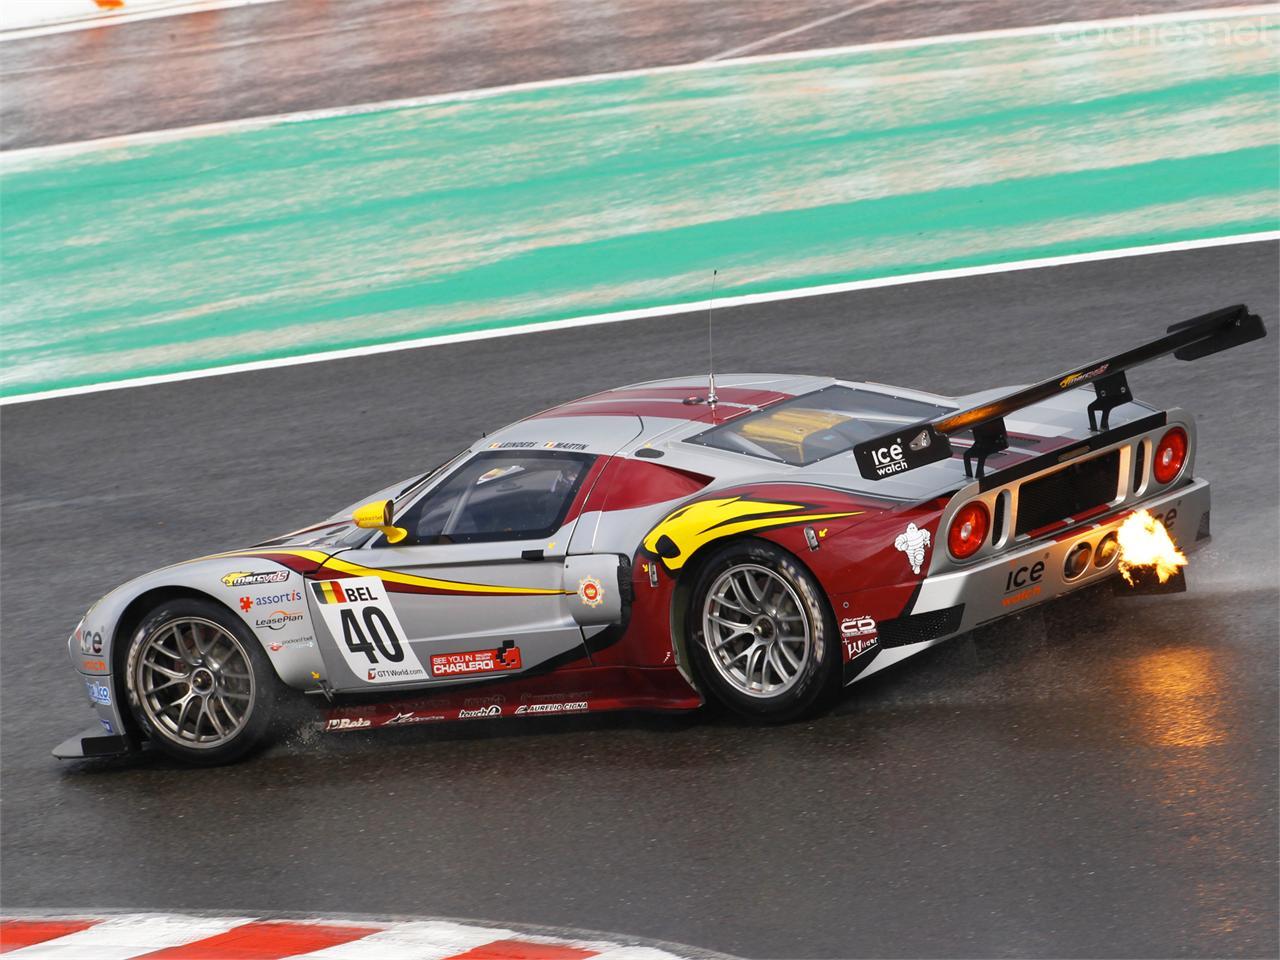 El preparador suizo Matech Concepts creó versiones de competición del Ford GT homologadas para las categorías GT1 y GT3. En imagen la del equipo belga Marc-VDS.